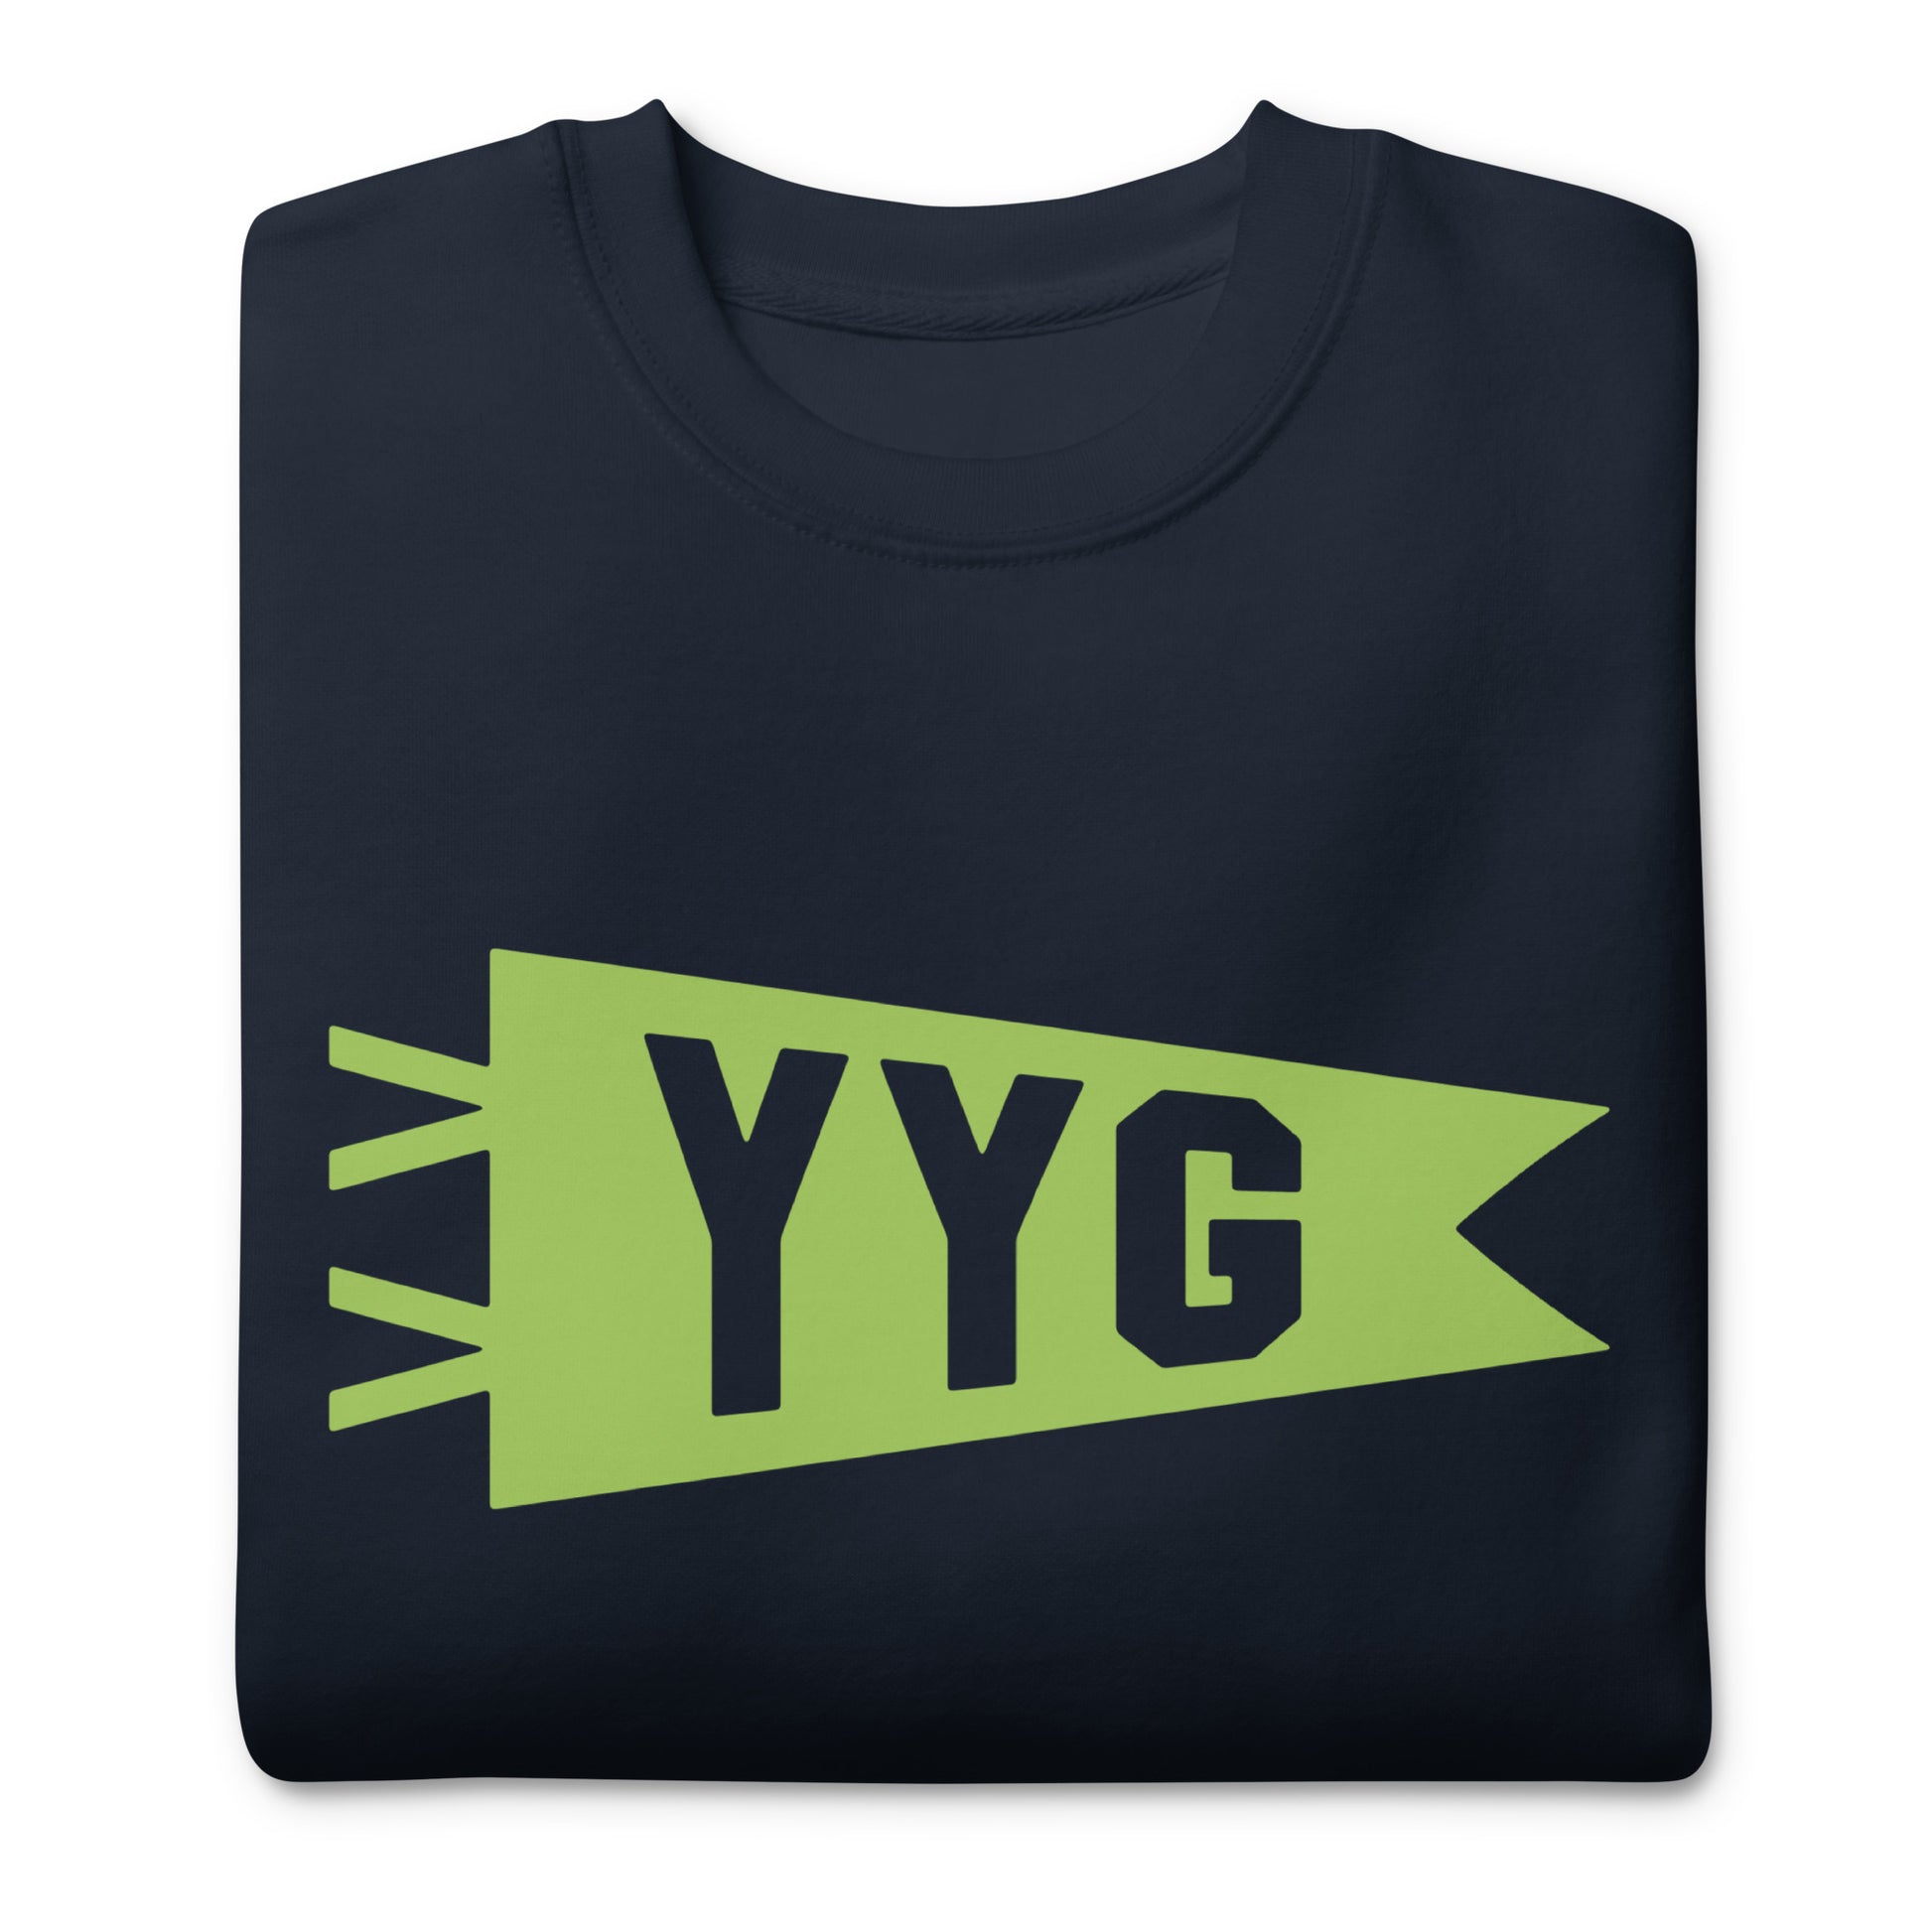 Airport Code Premium Sweatshirt - Green Graphic • YYG Charlottetown • YHM Designs - Image 03